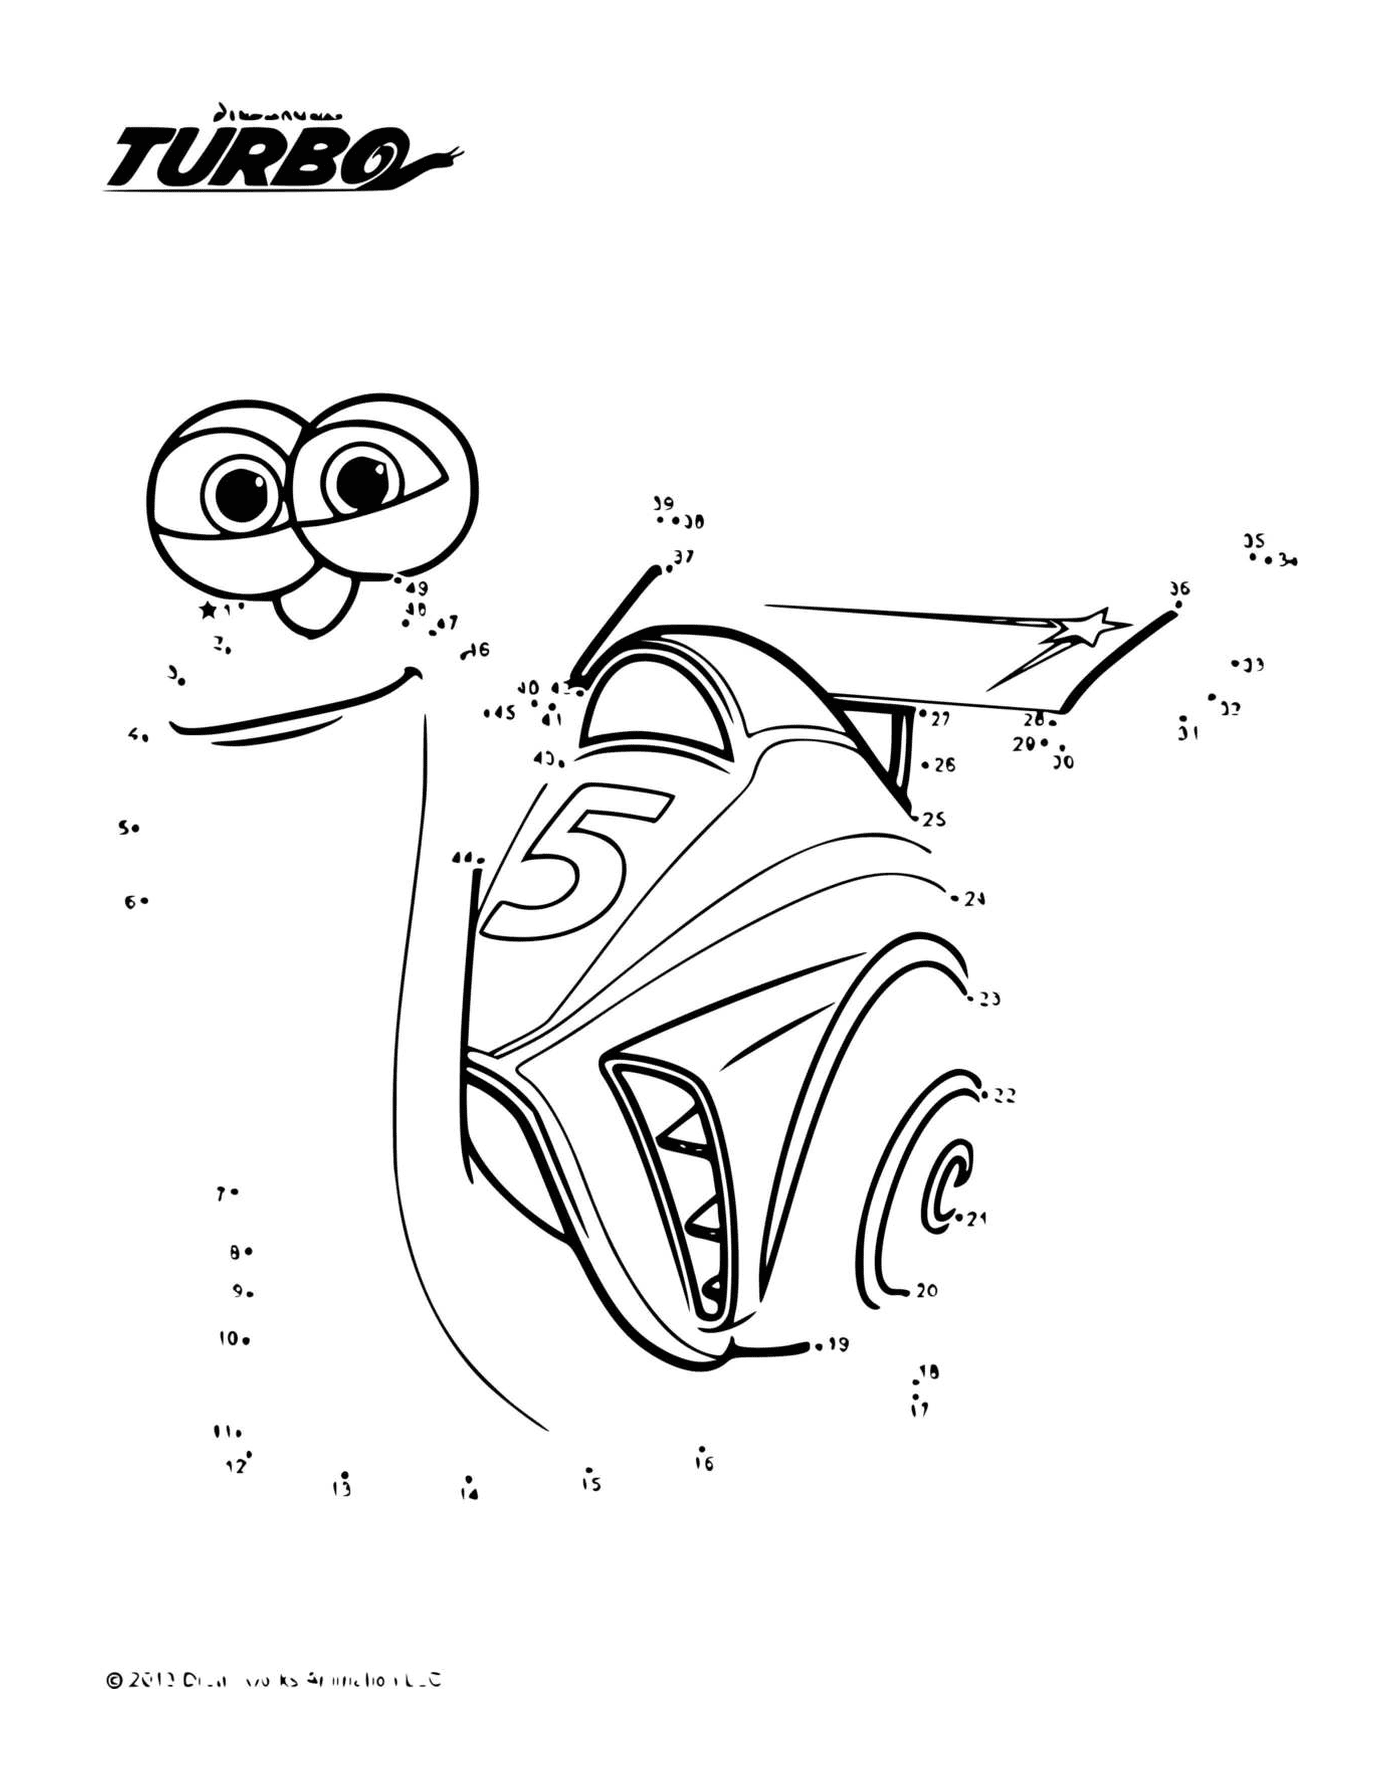  Turbo caracol conecta puntos para un coche de carreras 